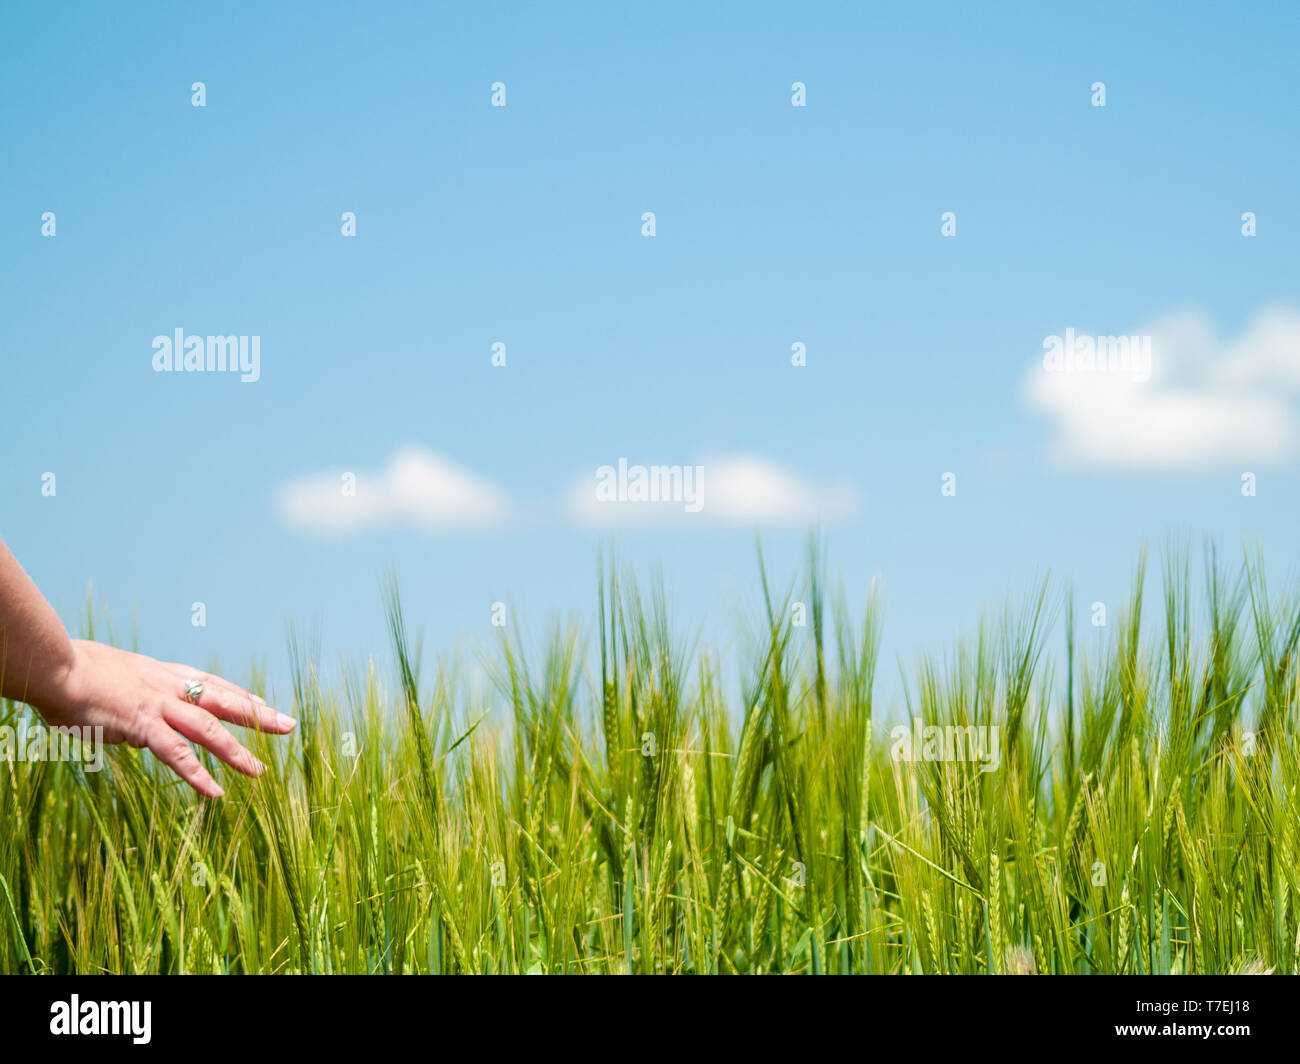 Persona irreconocible jugando con su mano las plantas en un campo de cultivo de cebada de primavera Foto de stock